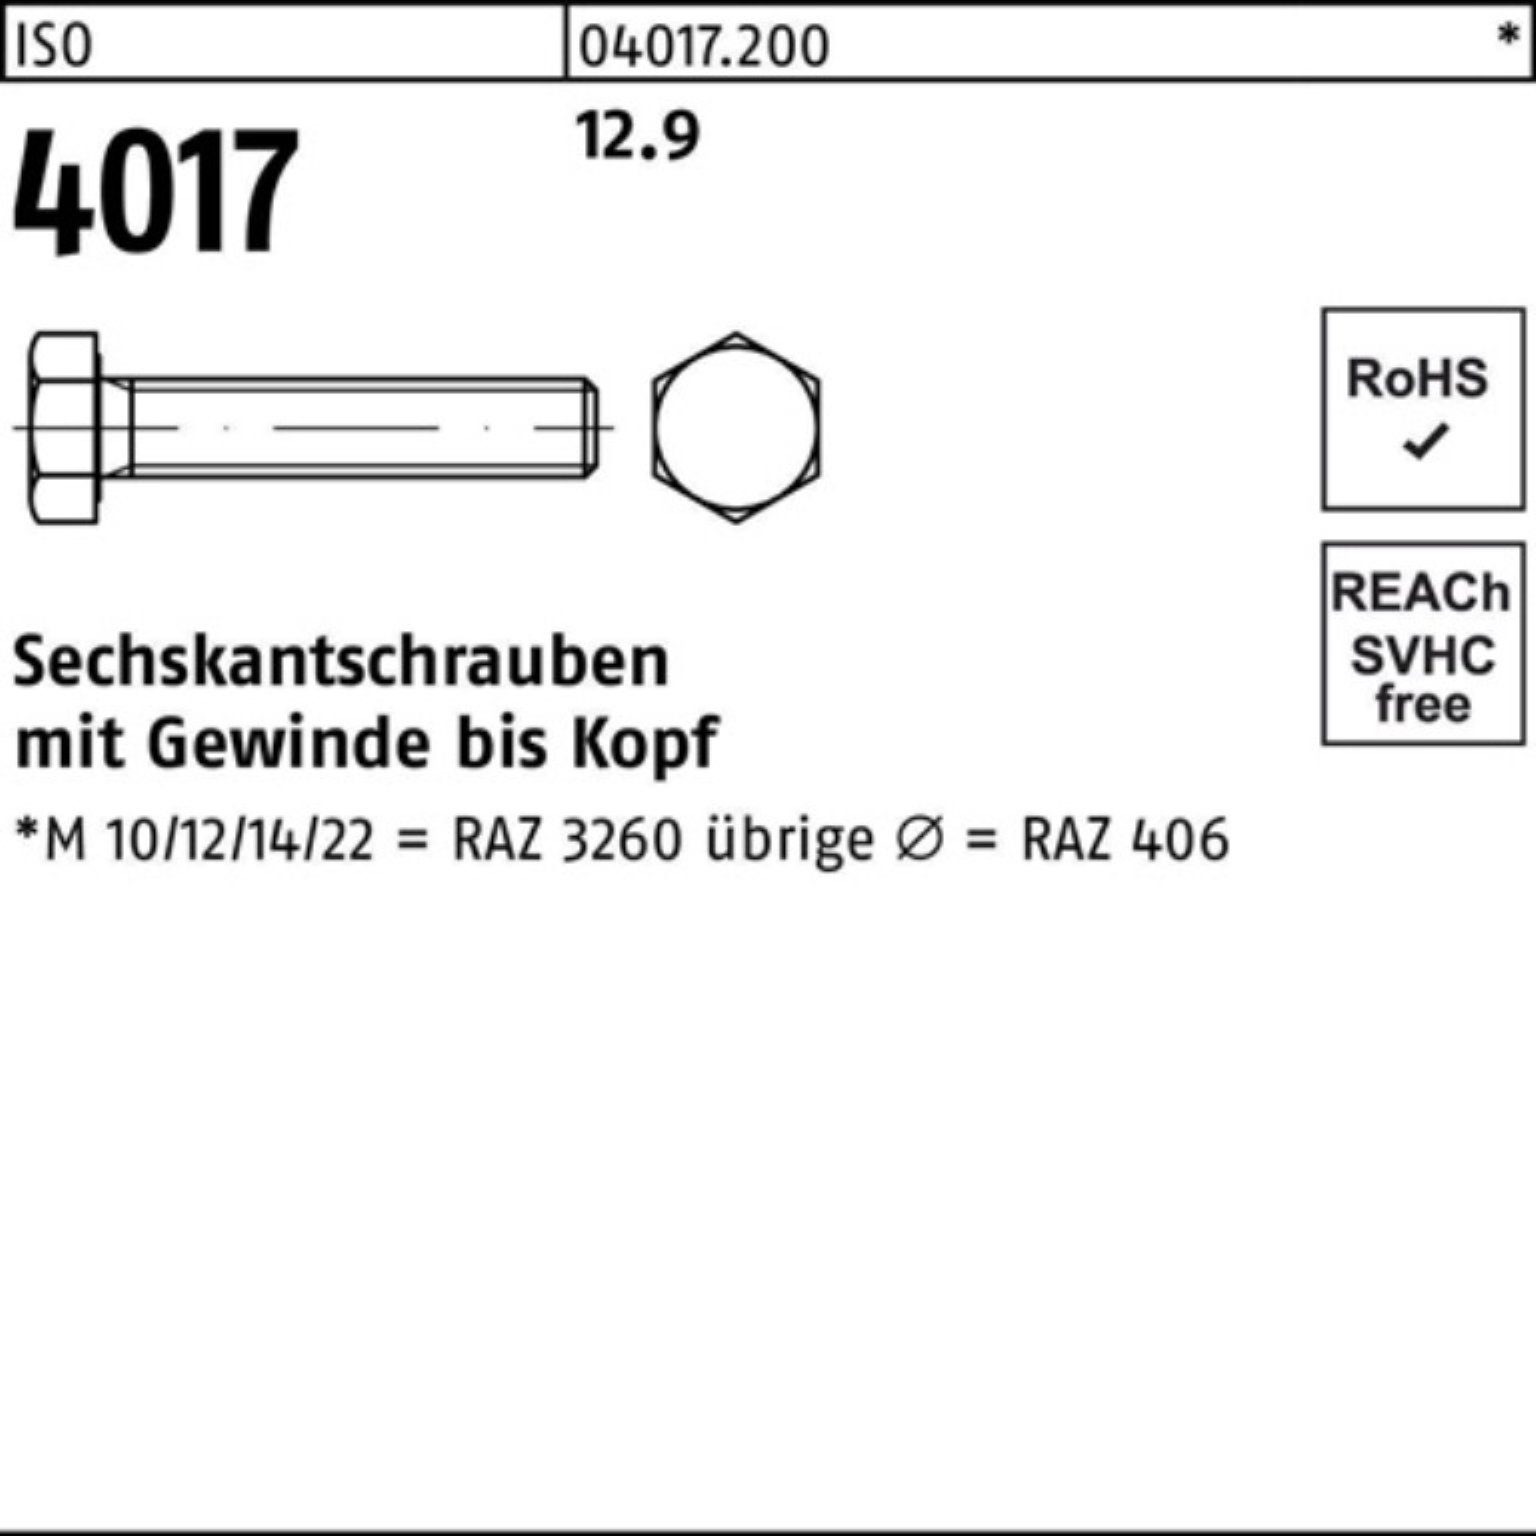 Sechskantschraube 12.9 Bufab Sechskantschraube 500 12 Pack VG Stück 4017 40 ISO 500er ISO M6x